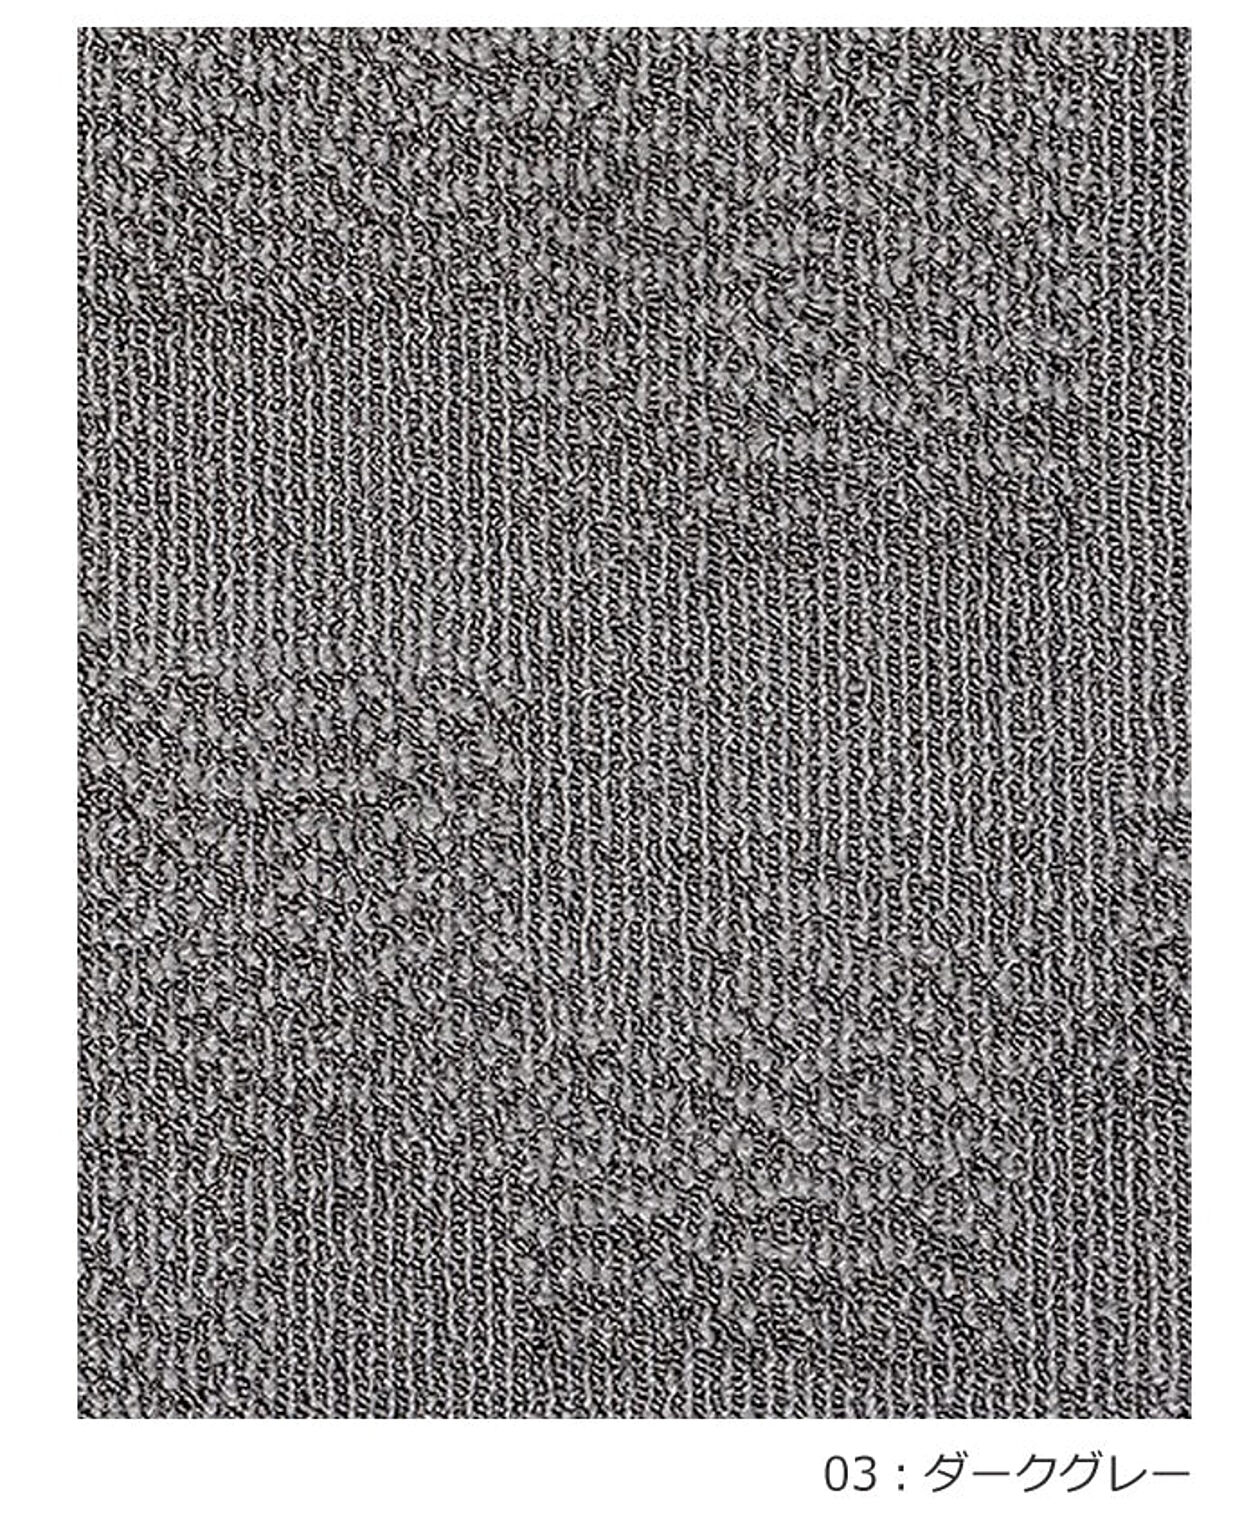 ラグ ラグマット 絨毯 日本製 カーペット prevell プレーベル ロルカ 江戸間4.5畳 約261×261cm 北欧 デザイン 防ダニ 抗菌 4畳半 4.5帖 四畳半 引っ越し 新生活